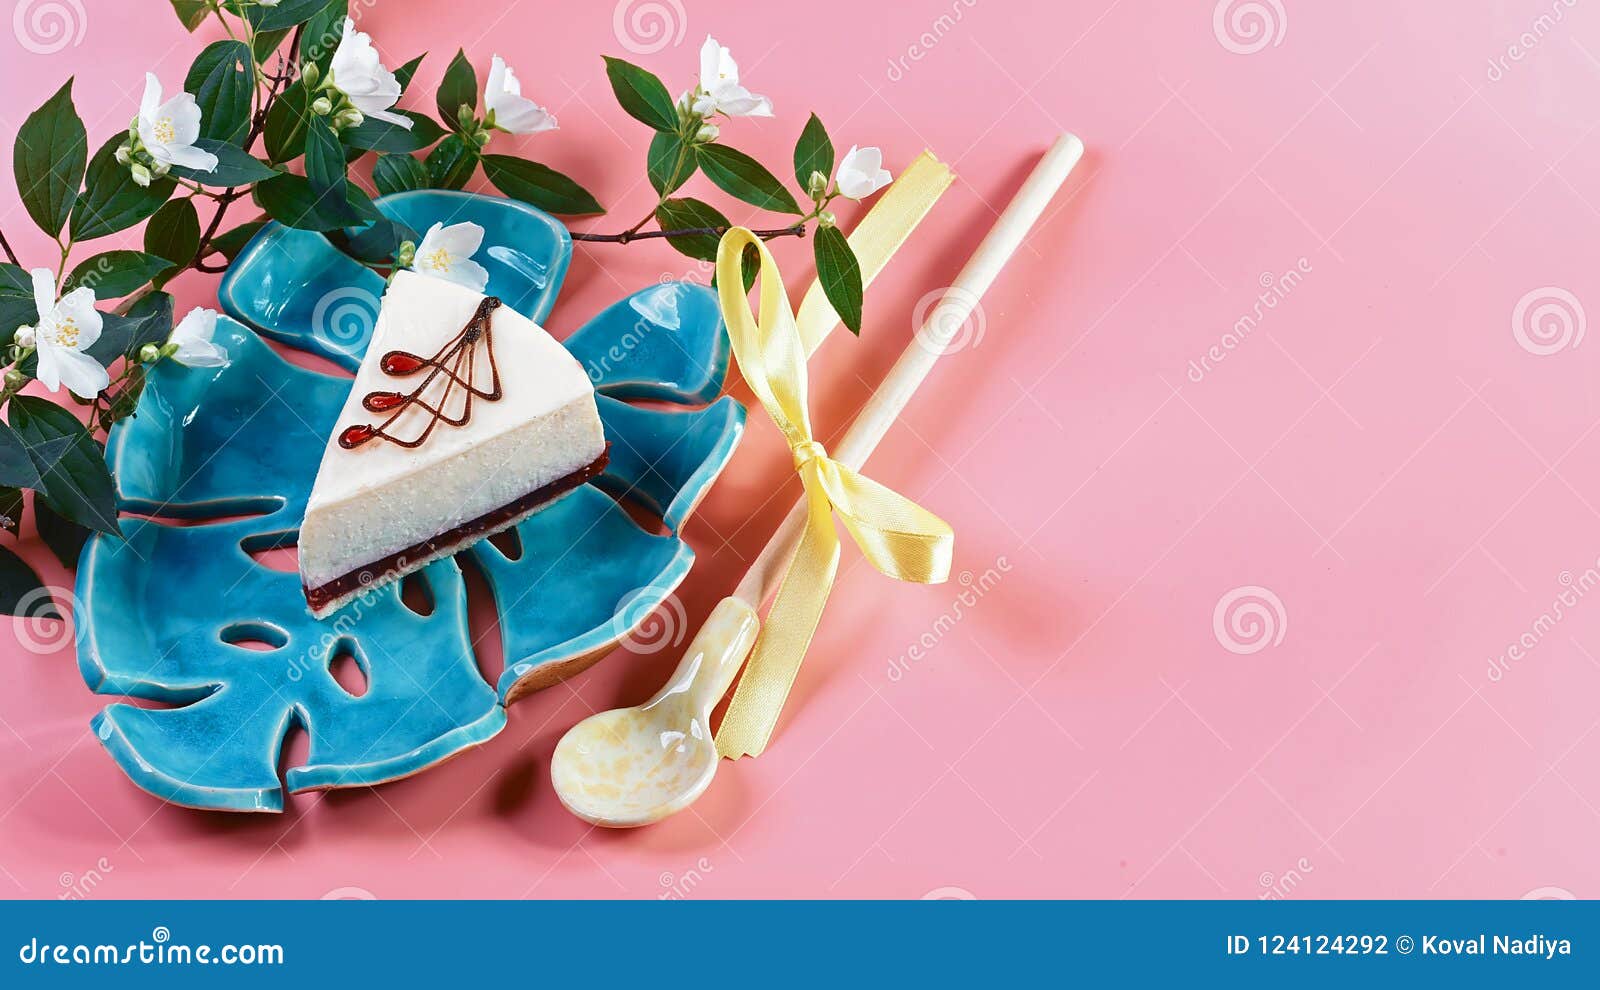 Pastel De Queso Dulce Con Una Puntilla Del Jazmín En Un Fondo Rosado,  Espacio De La Copia, Endecha Plana Foto de archivo - Imagen de cocina,  eclair: 124124292